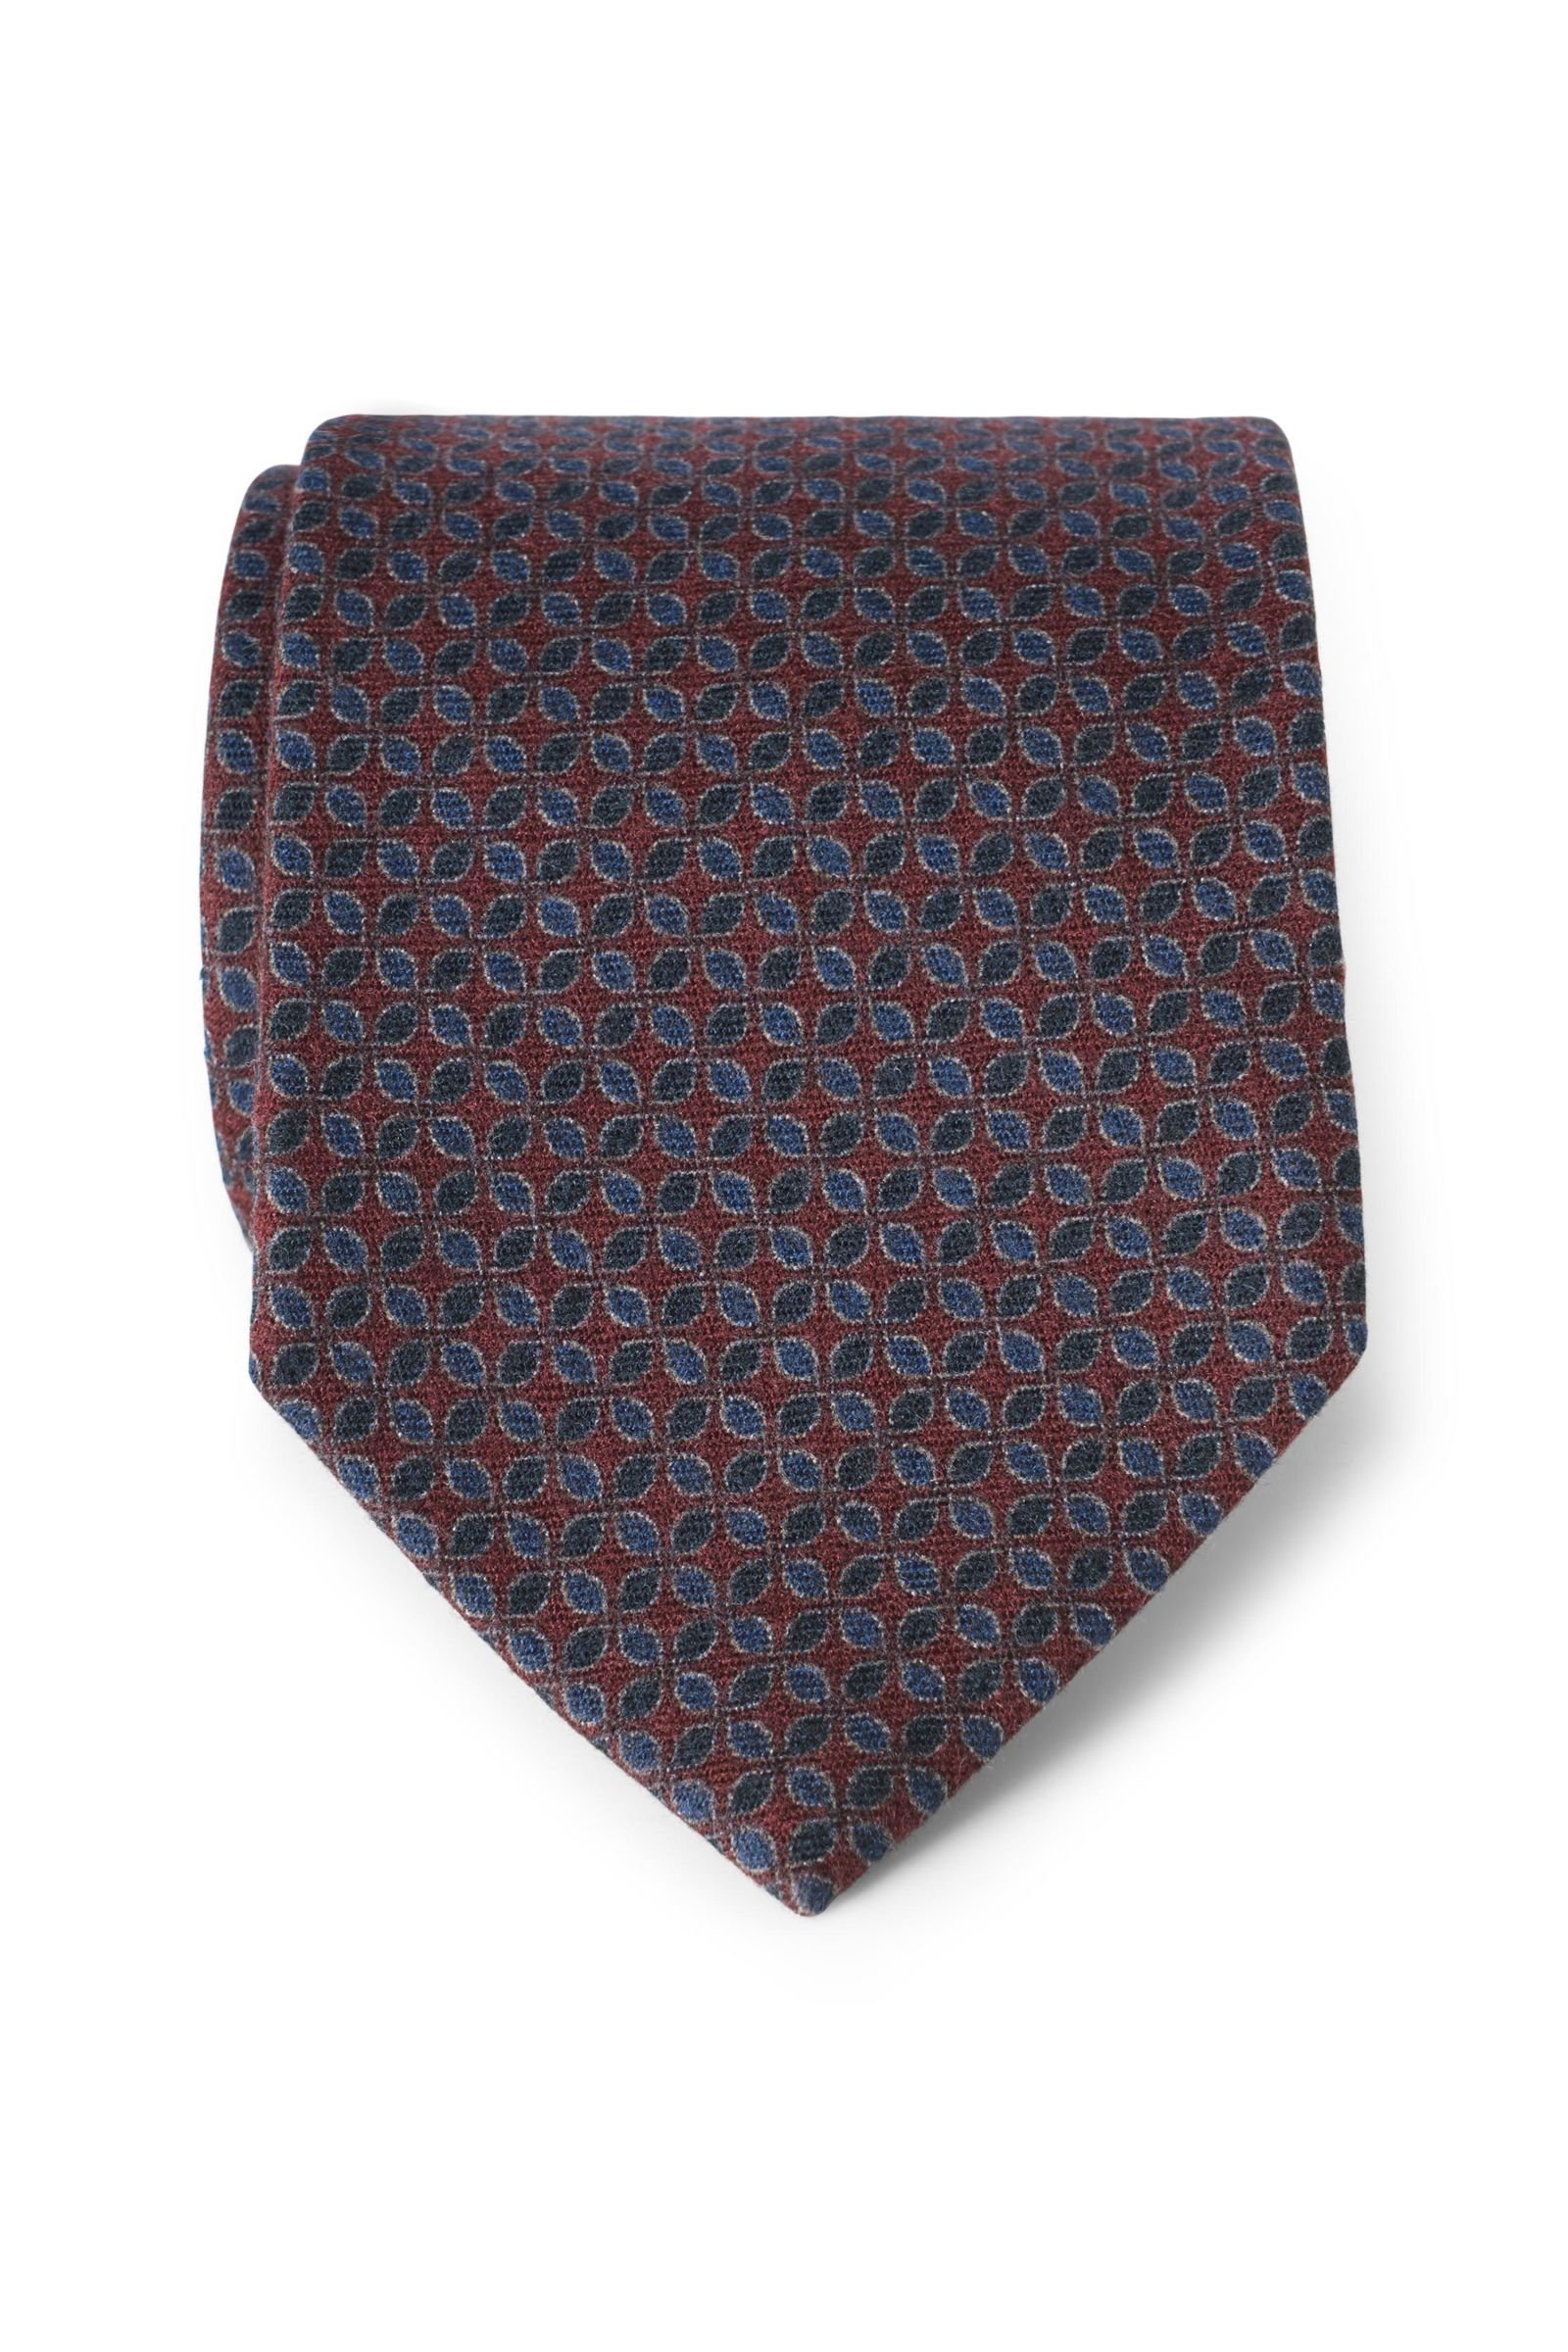 Wool tie burgundy patterned